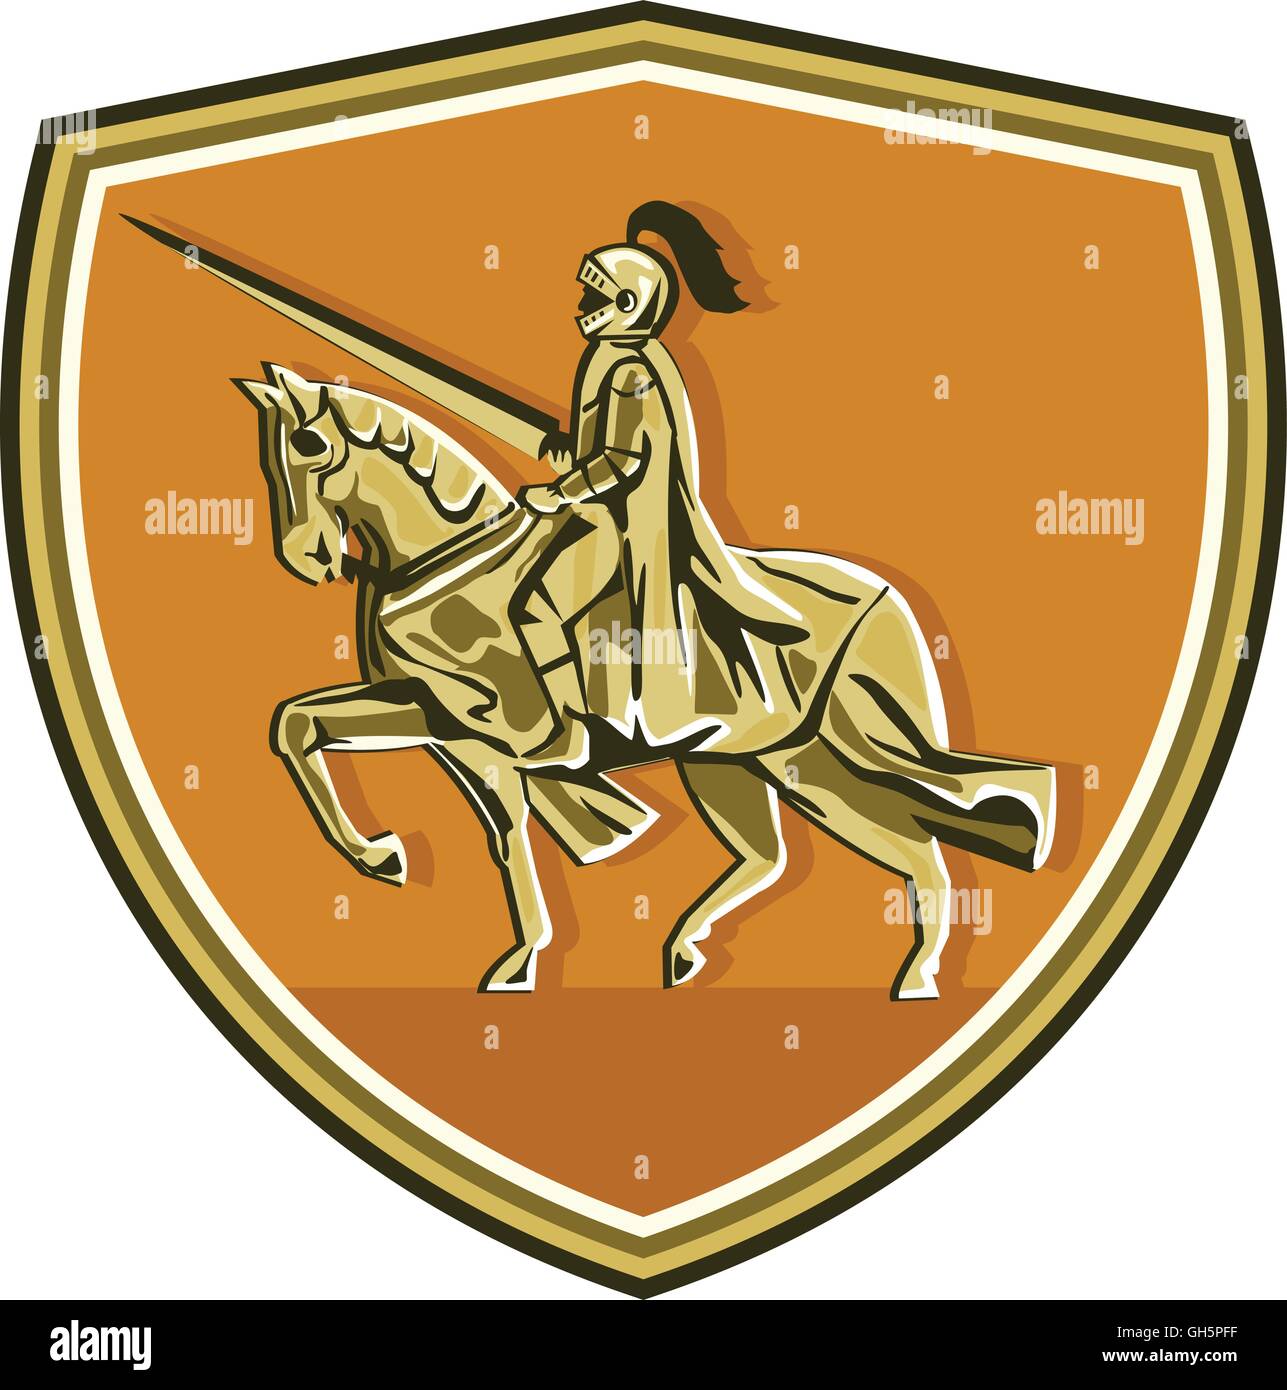 Illustrazione del cavaliere in armatura completa con lancia di equitazione destriero visto dal lato impostato all'interno della protezione crest fatto in stile retrò. Illustrazione Vettoriale